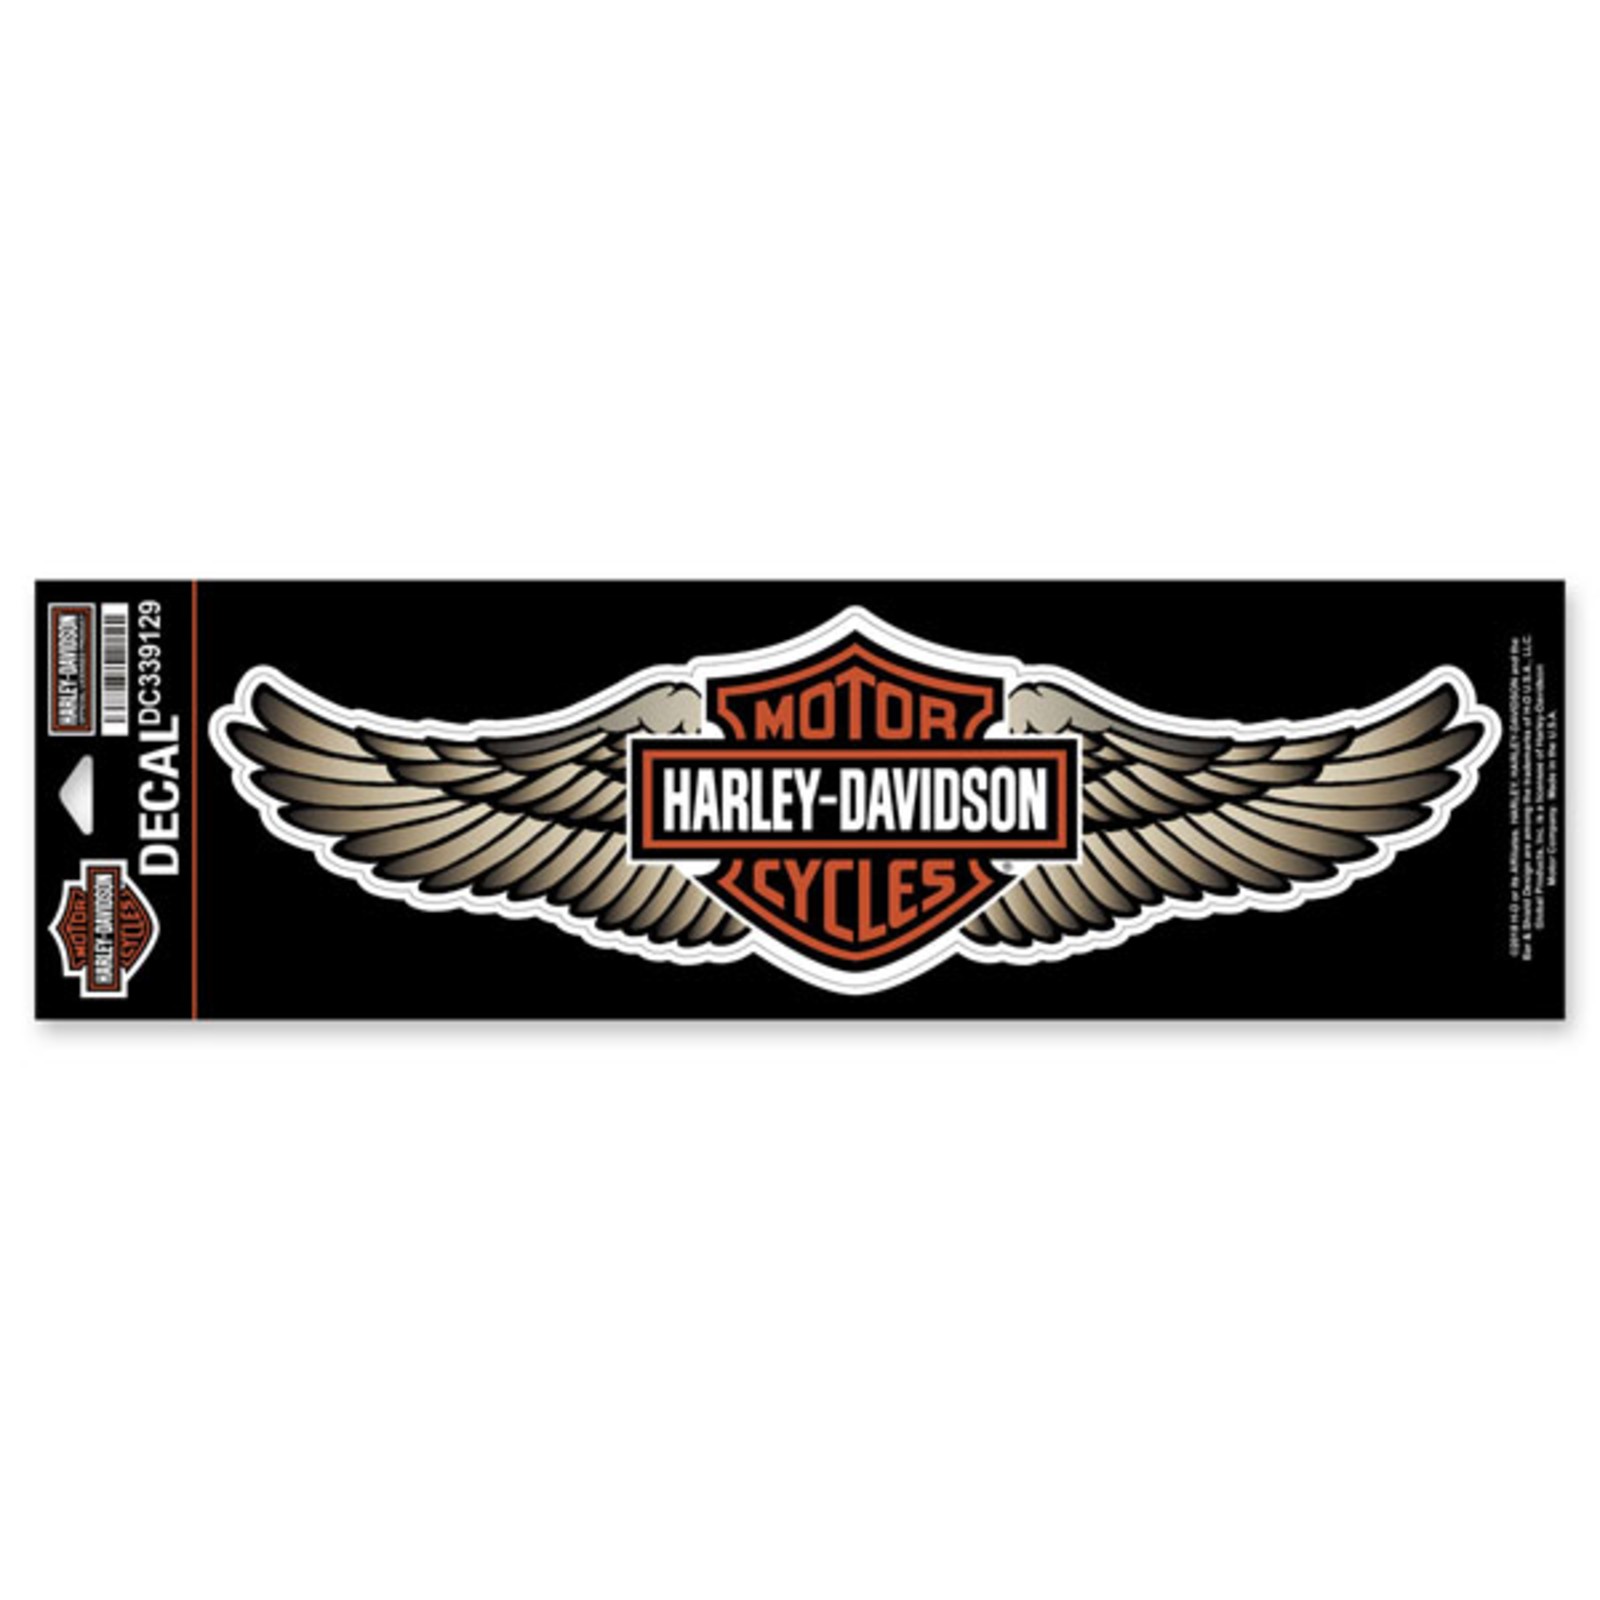 Harley Davidson Aufkleber Autoaufkleber Sticker Decals  24 x 18cm oder größer 